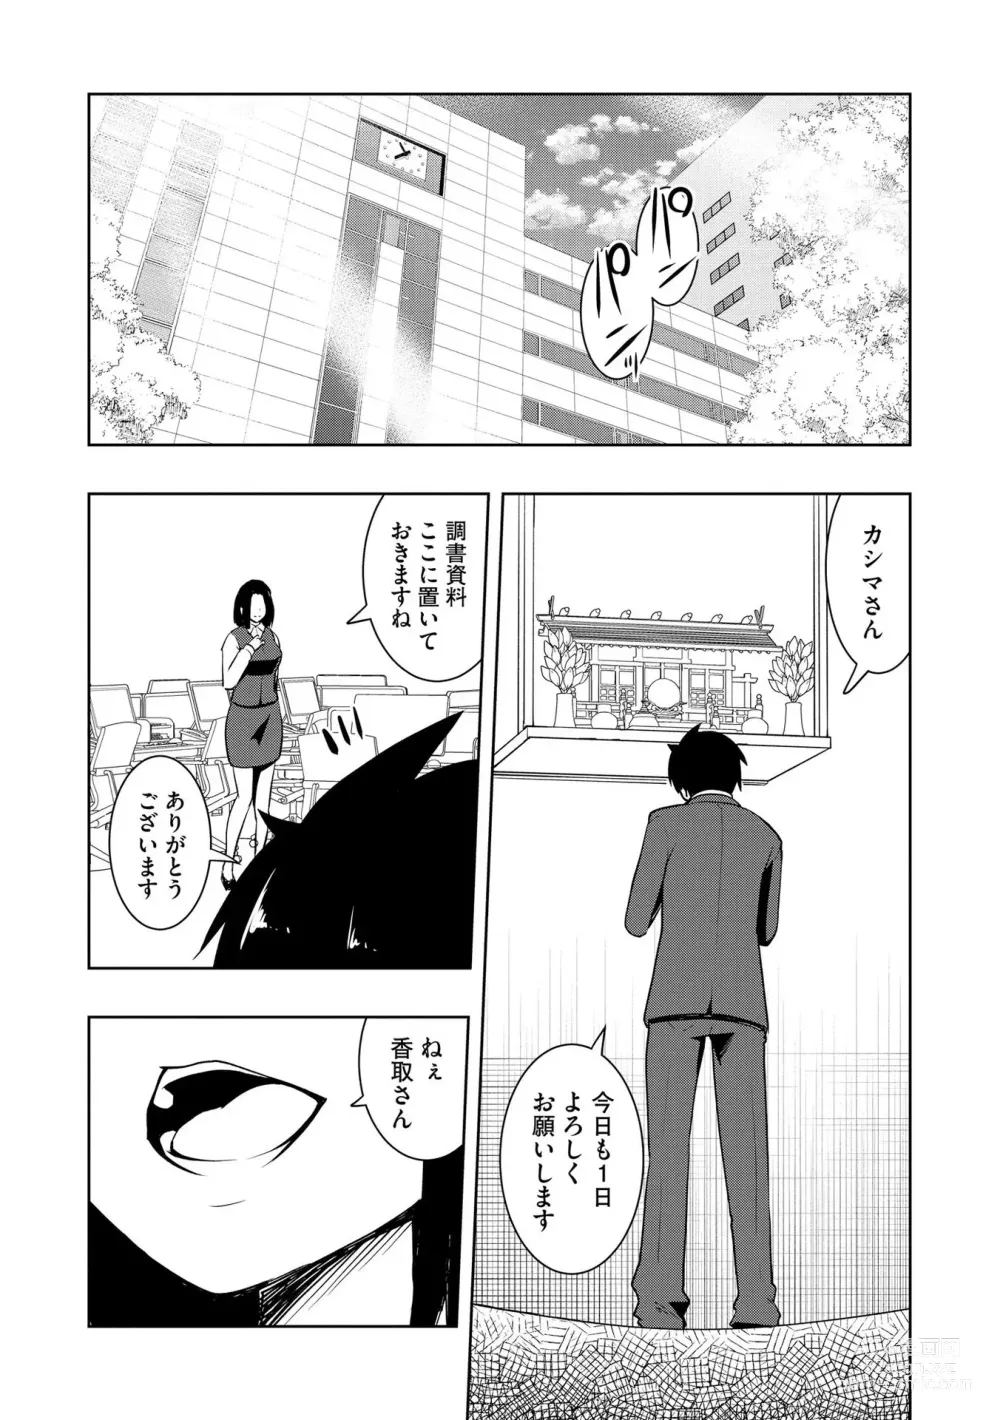 Page 197 of manga Kai-In Hontou wa Yarashii Toshi Densetsu